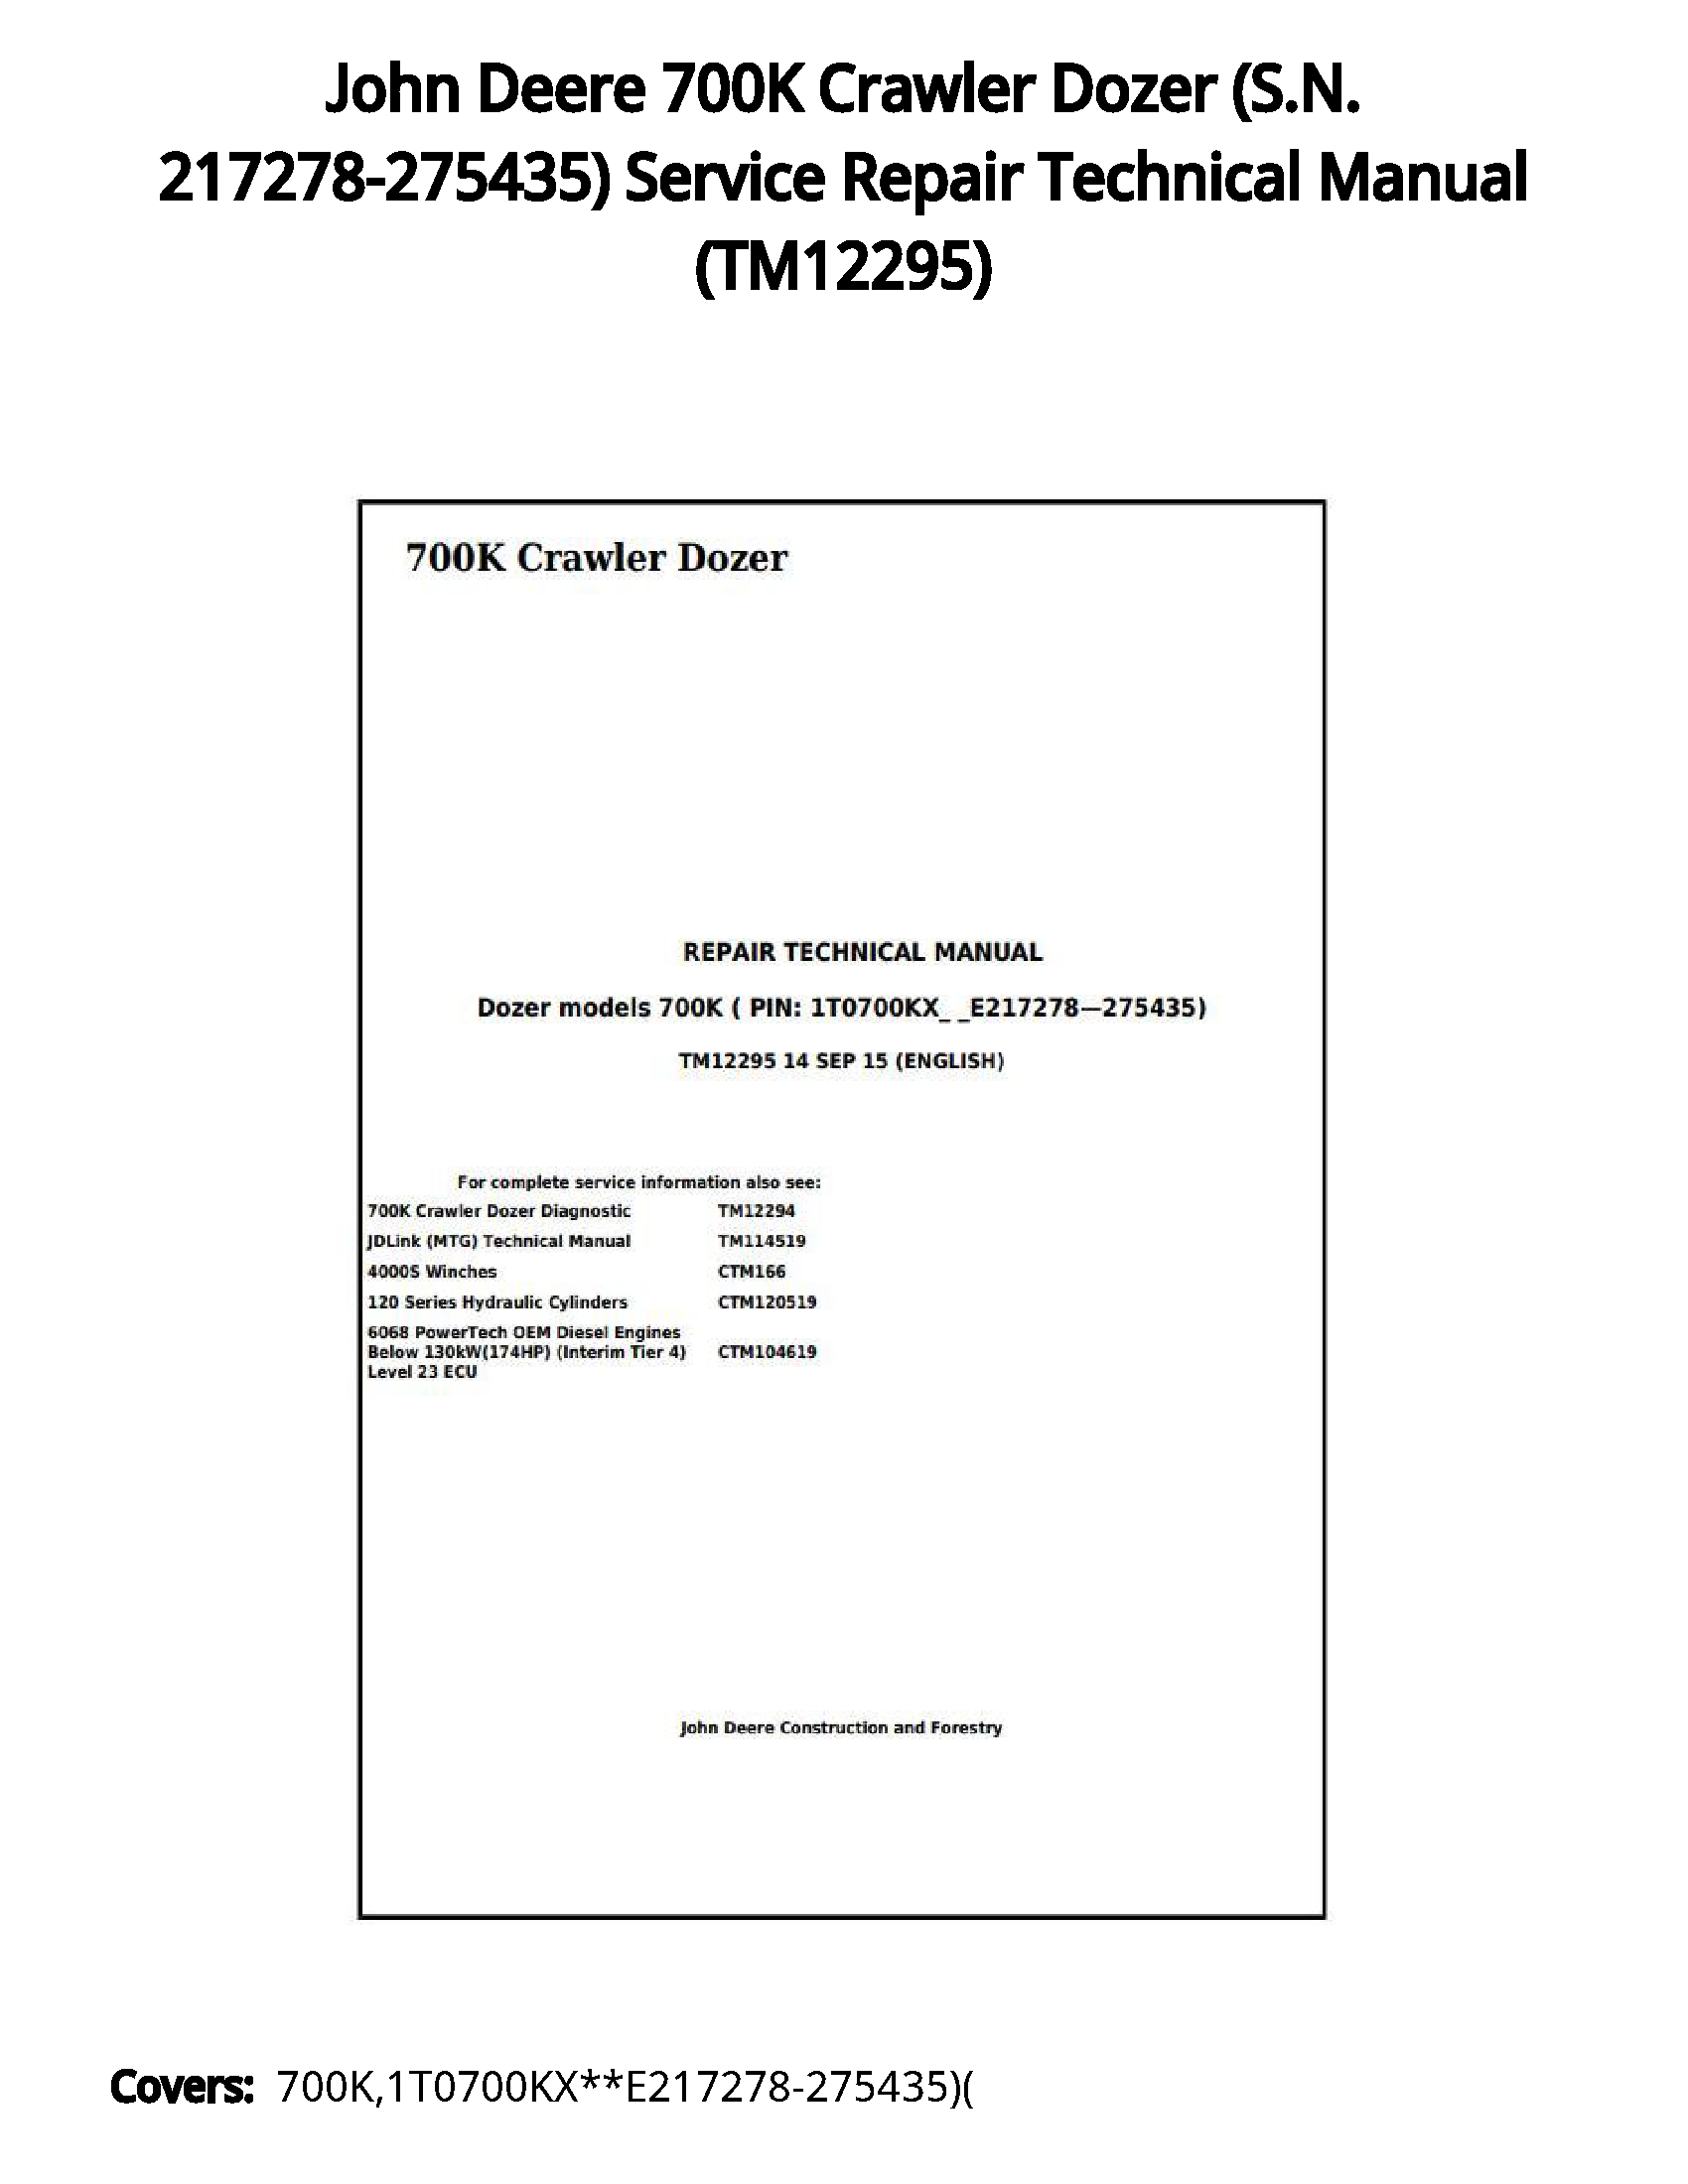 John Deere 700K Crawler Dozer (S.N. 217278-275435) Service Repair Technical Manual - TM12295